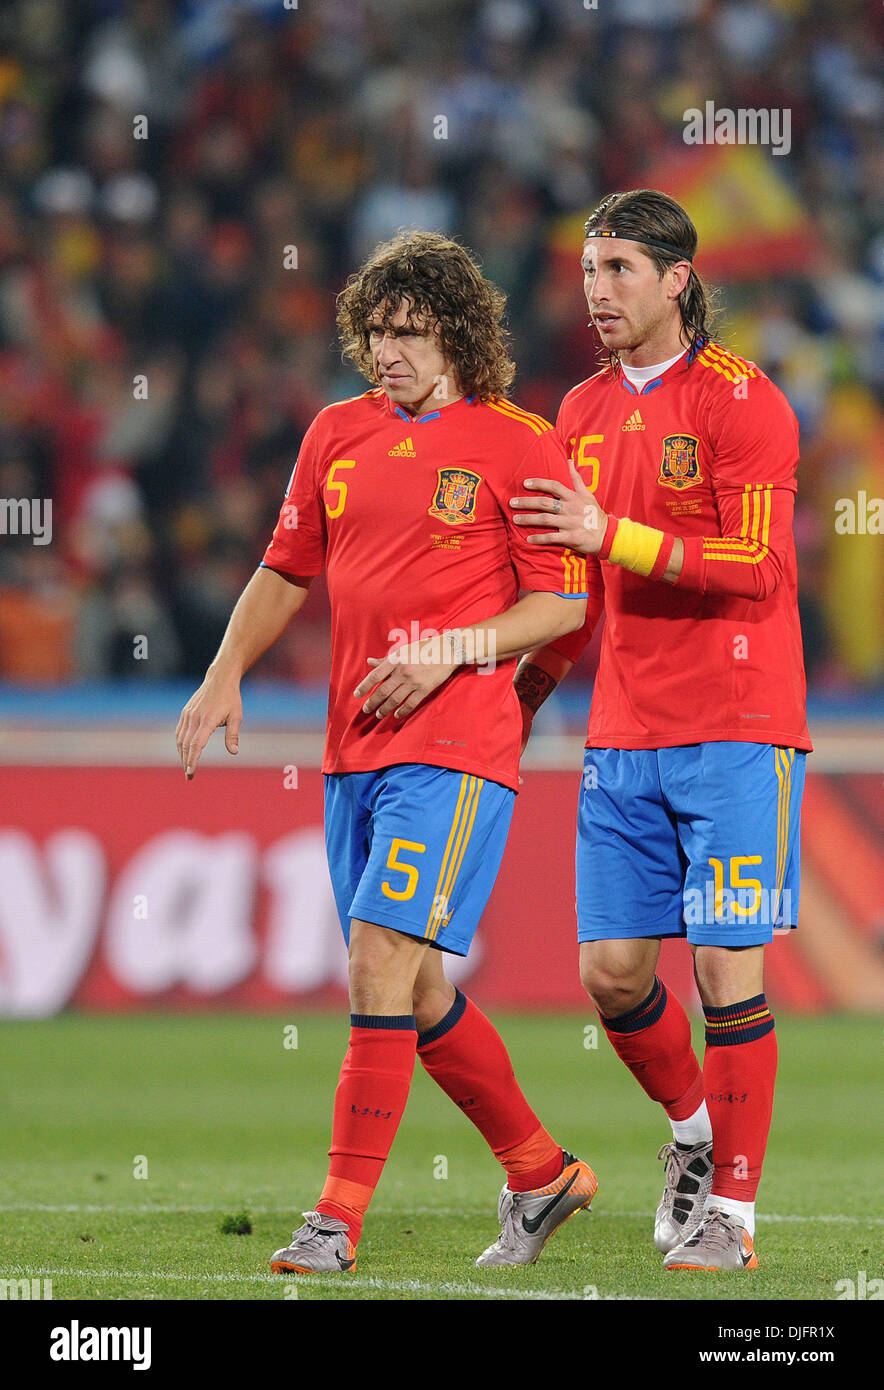 Junio 21, 2010 - Johannesburgo, Sudáfrica Carles Puyol y Sergio Ramos de España son vistos durante la Copa Mundial la FIFA 2010 de fútbol entre España y en